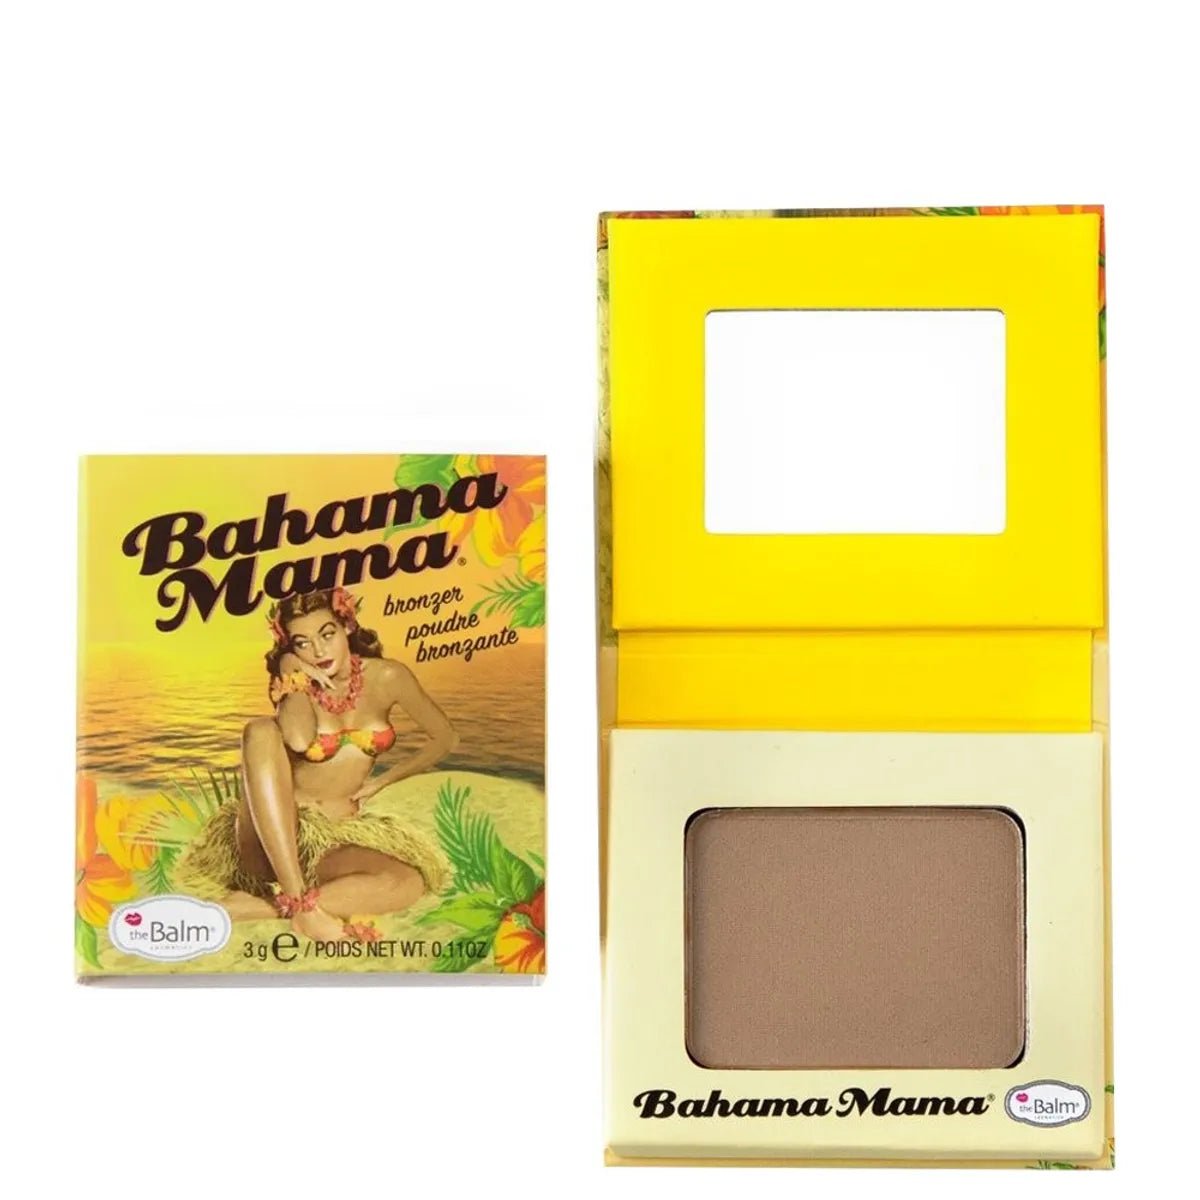 The Balm Mini Bahama Mama Bronzer - AllurebeautypkThe Balm Mini Bahama Mama Bronzer